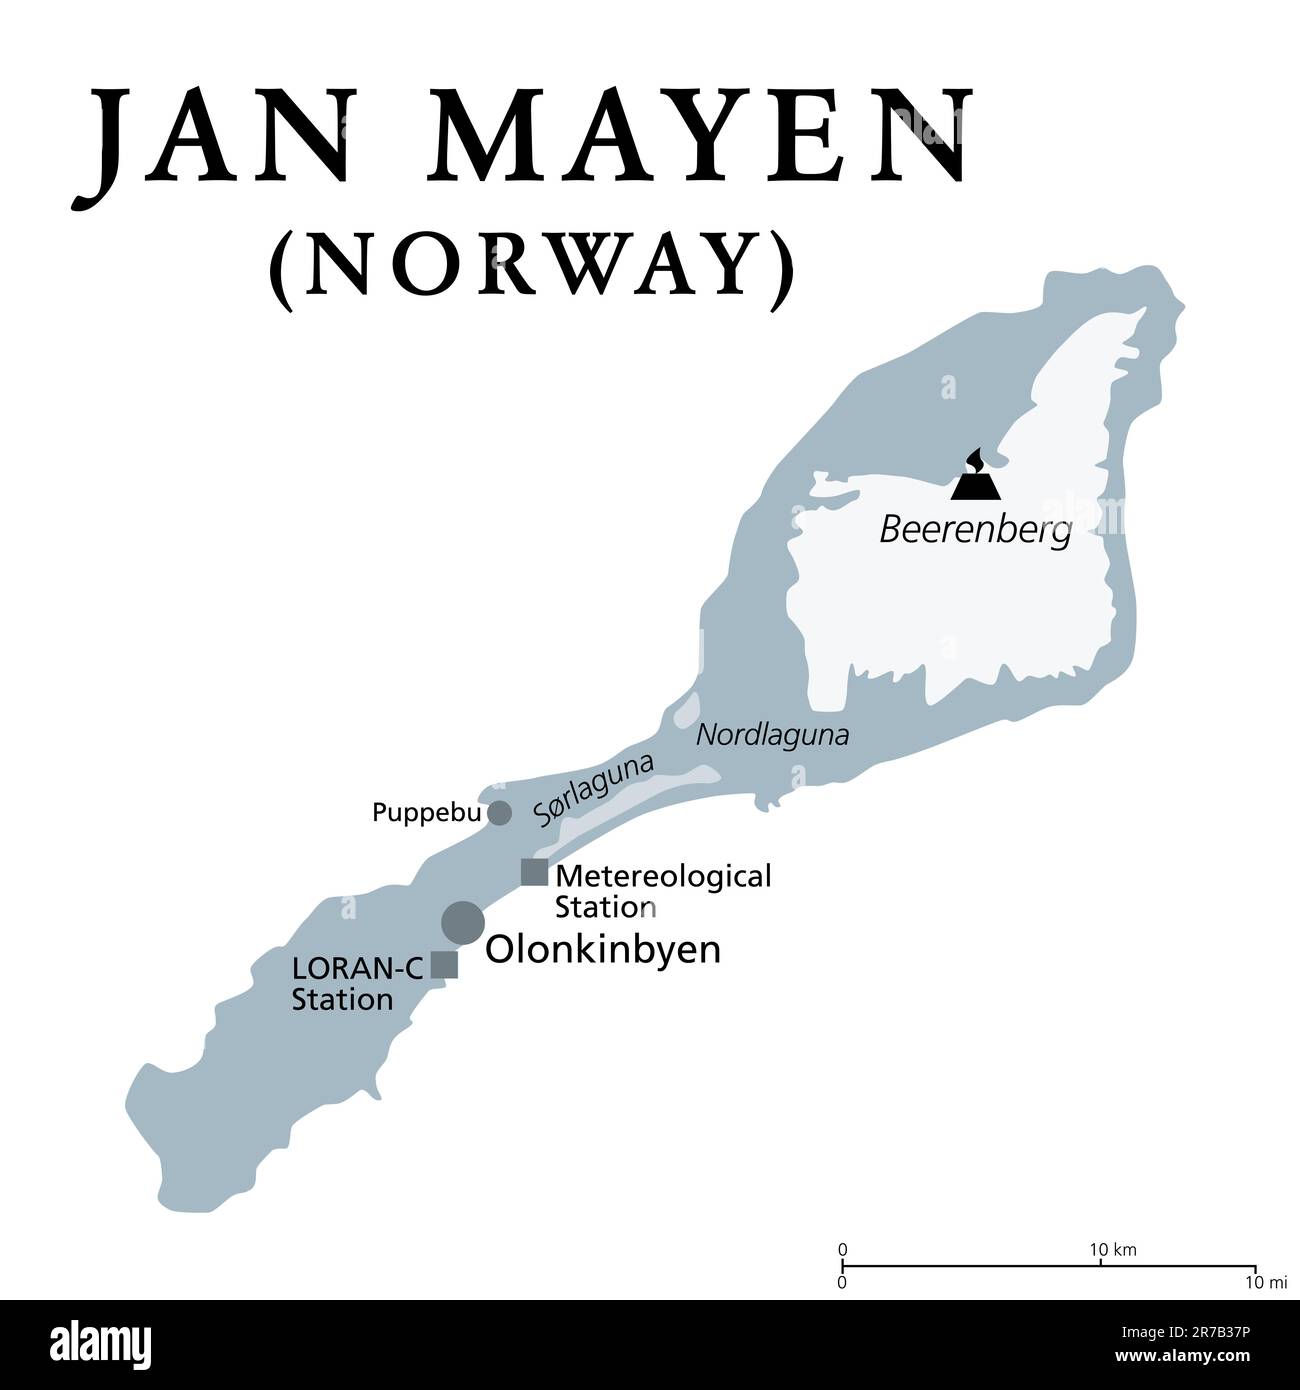 Jan Mayen, mappa politica grigia. Isola vulcanica norvegese nell'Oceano Artico tra la Groenlandia e il Mare di Norvegia, in parte ricoperta di ghiacciai. Foto Stock